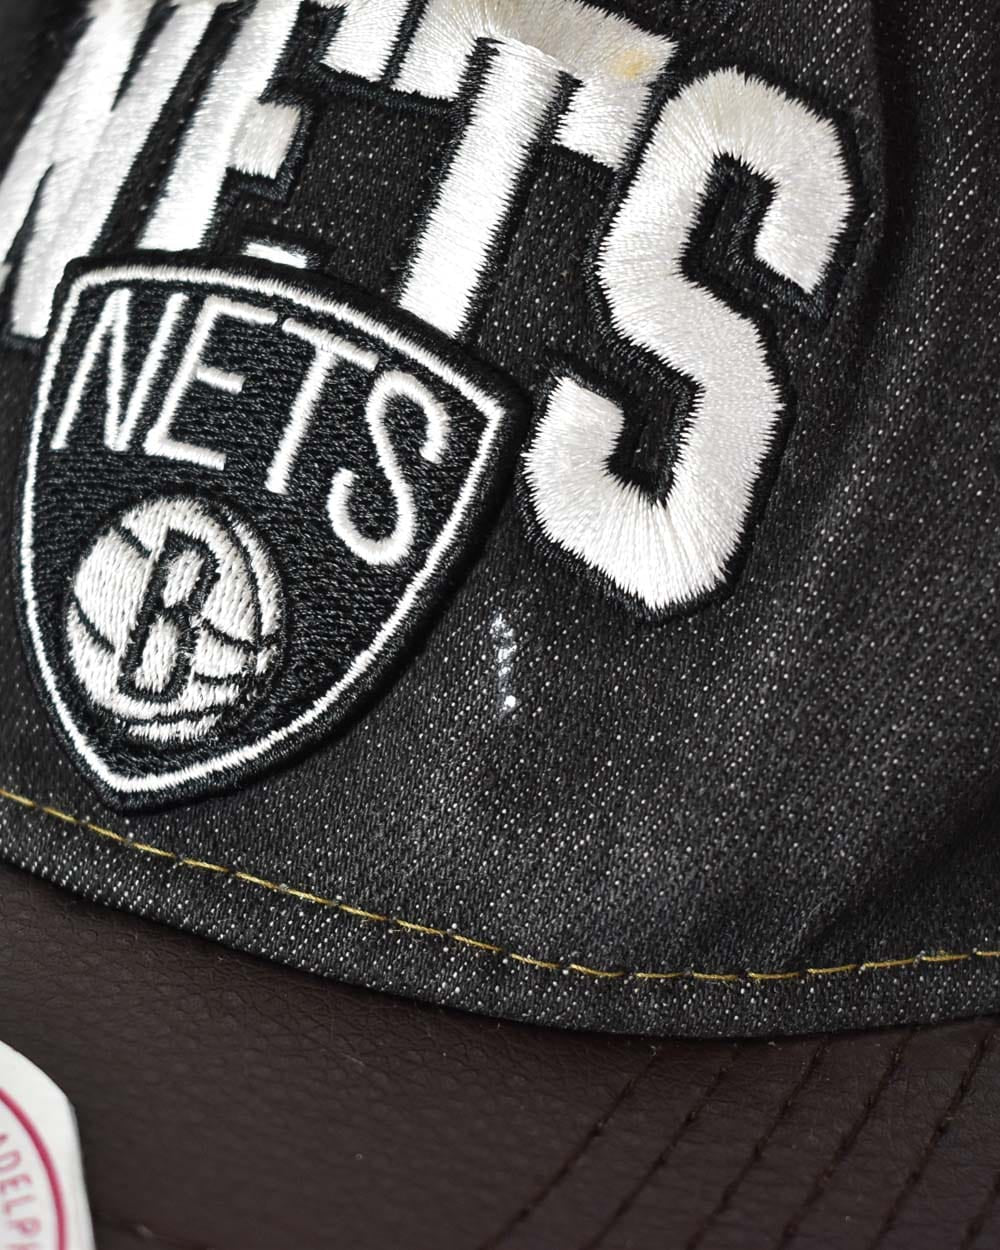 Black Mitchell & Ness Brooklyn Nets Cap